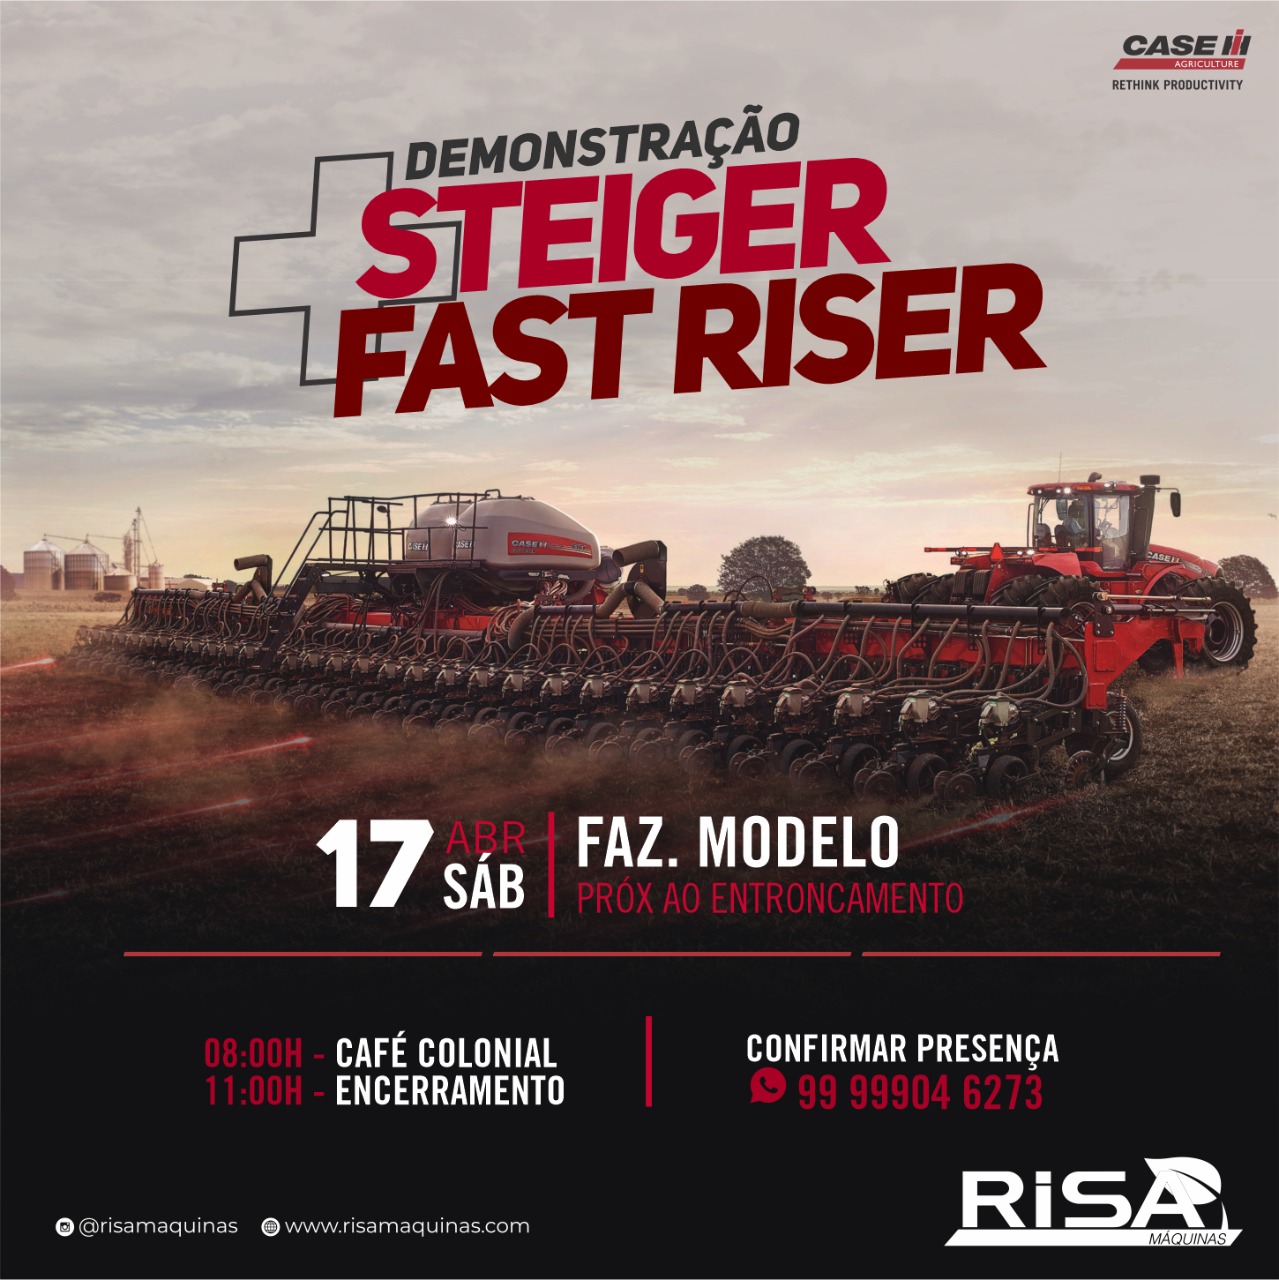 Demonstração do trator Steiger 470 e da plantadeira Fast Riser 61 linhas da Case IH